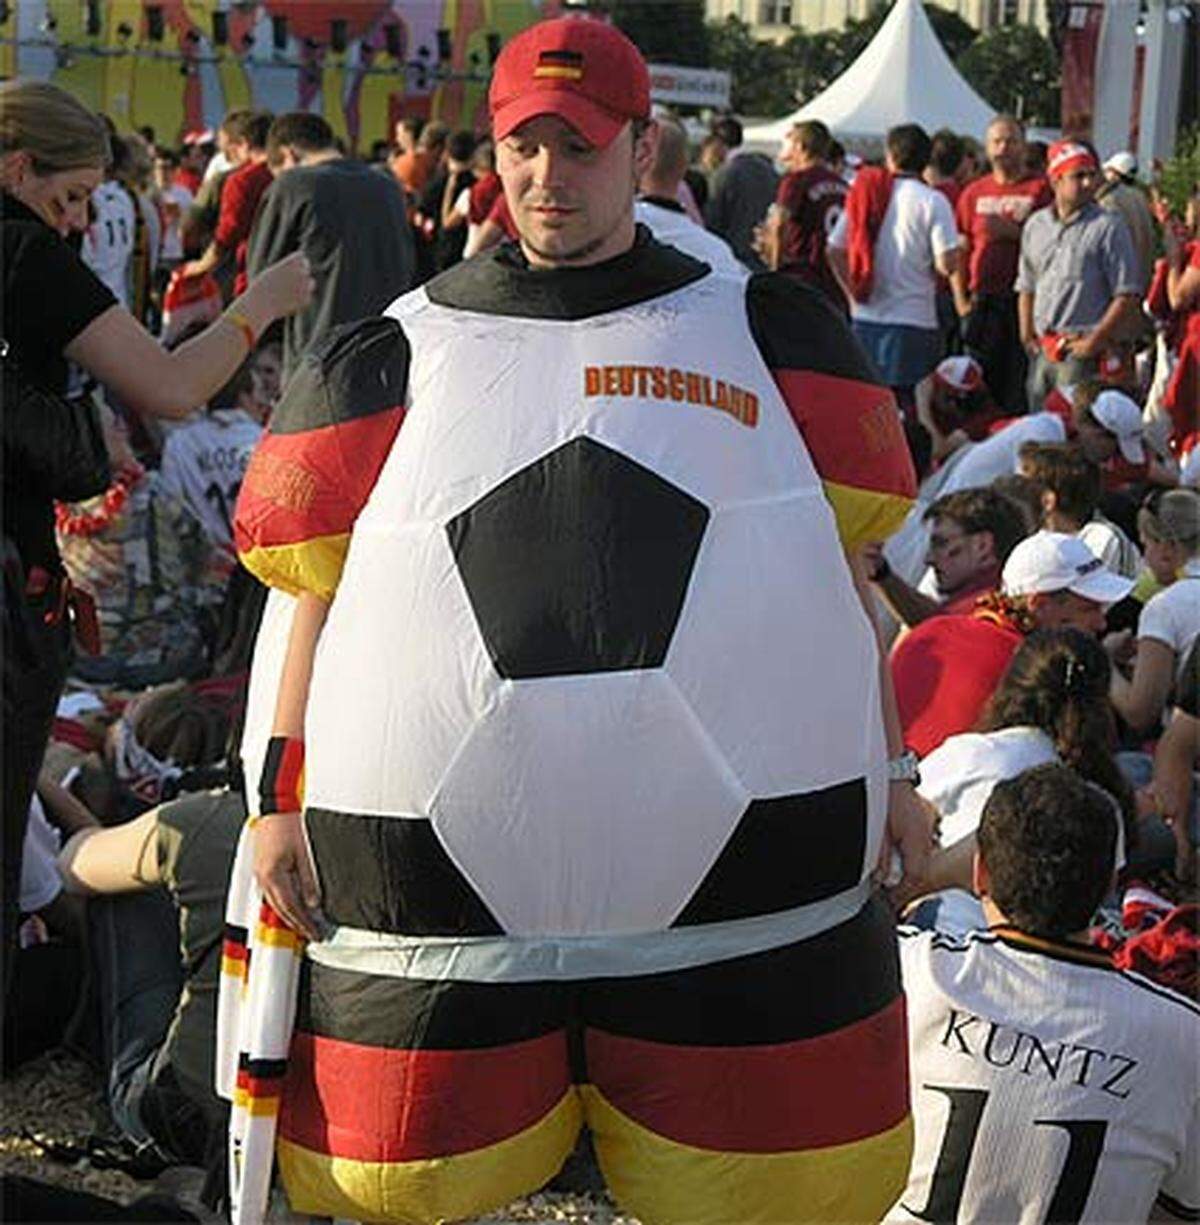 Doch dem steht die Klasse der deutschen Mannschaft entgegen - oder will dieser Fan etwas anderes mit dieser Verkleidung ausdrücken?